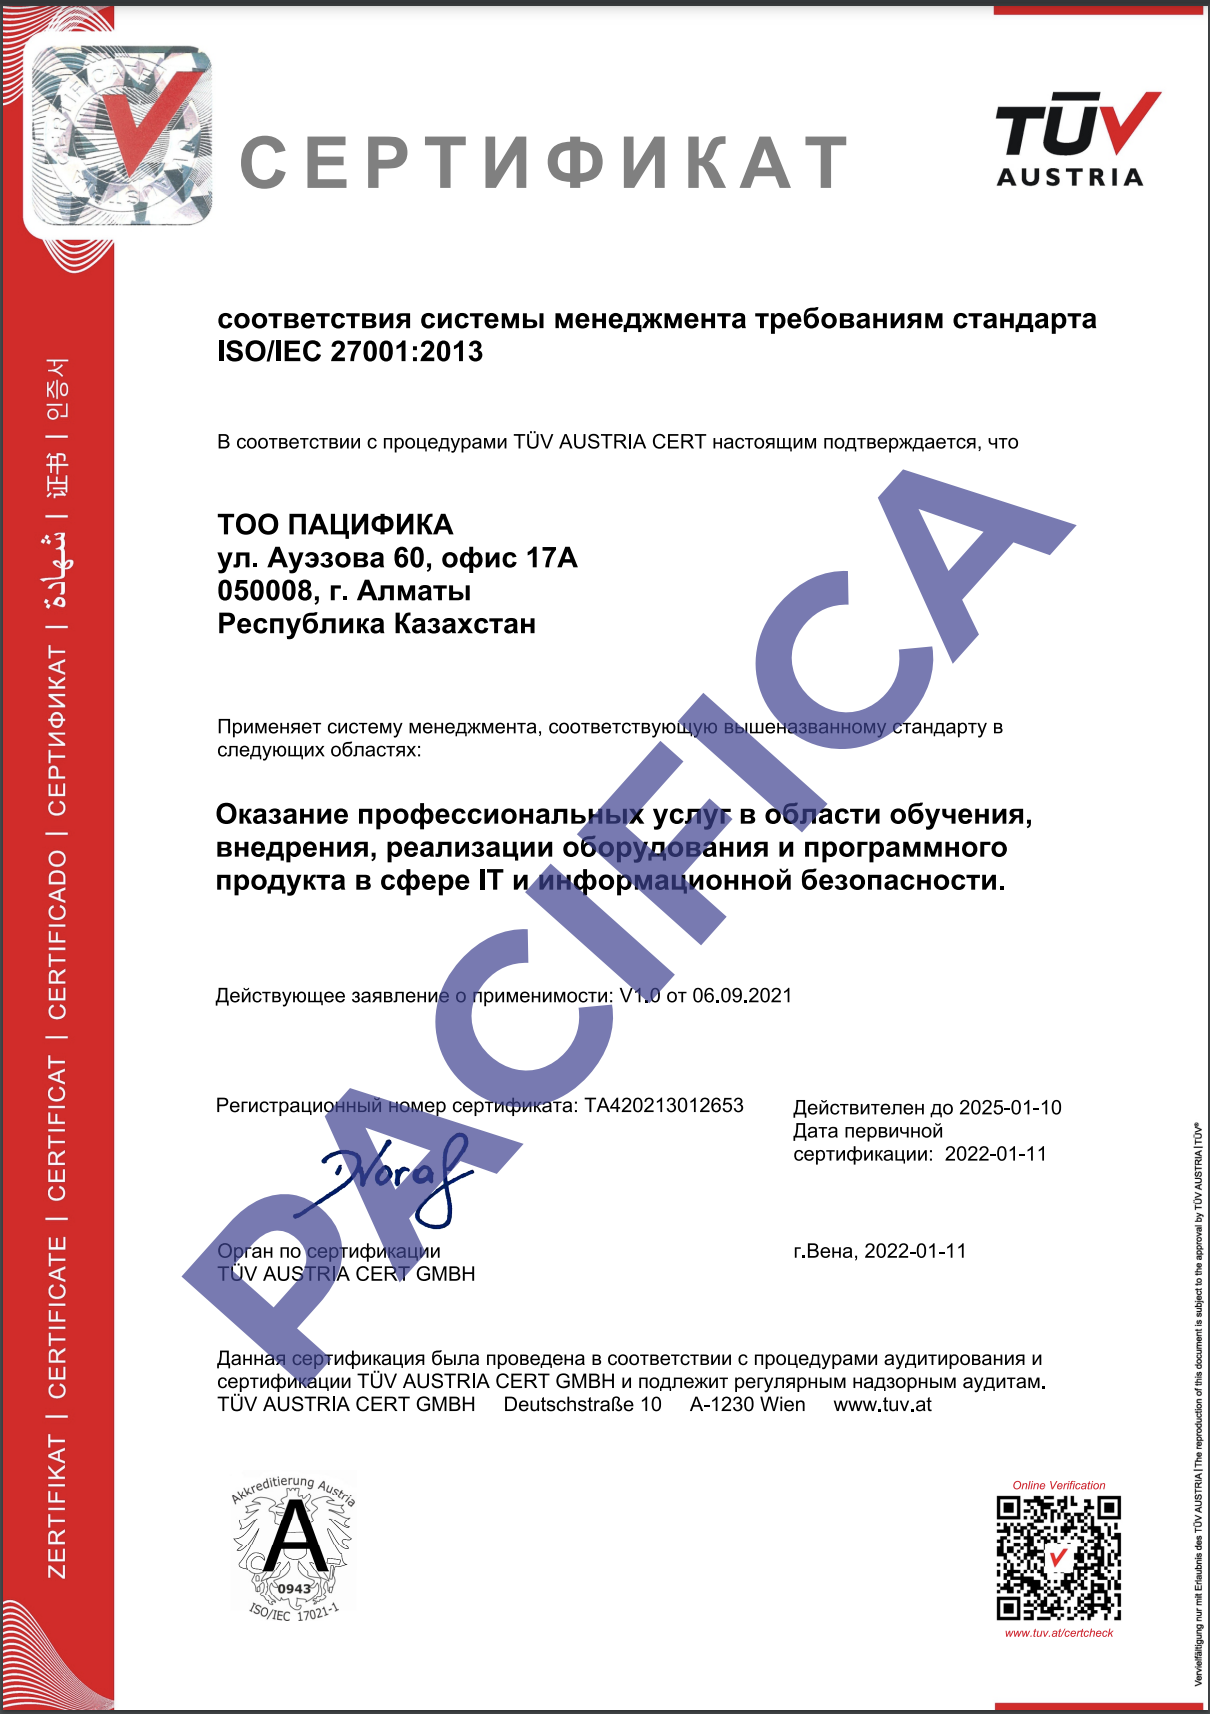 Сертификат ISO 27001